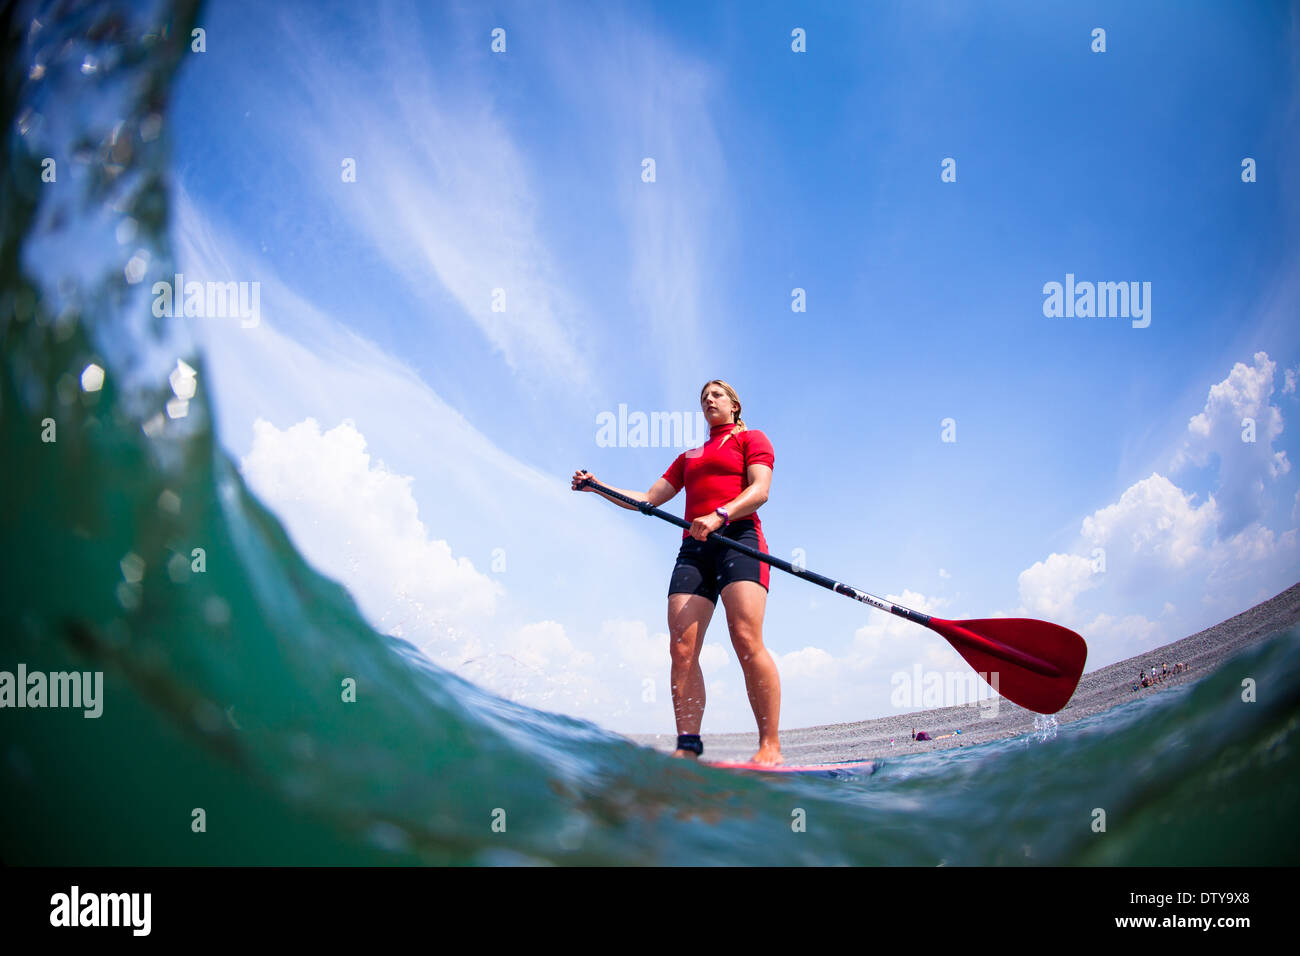 Une fille dans un rash vest paddleboards rouge dans les eaux claires du North Devon UK SUP (stand up paddleboarding) Banque D'Images